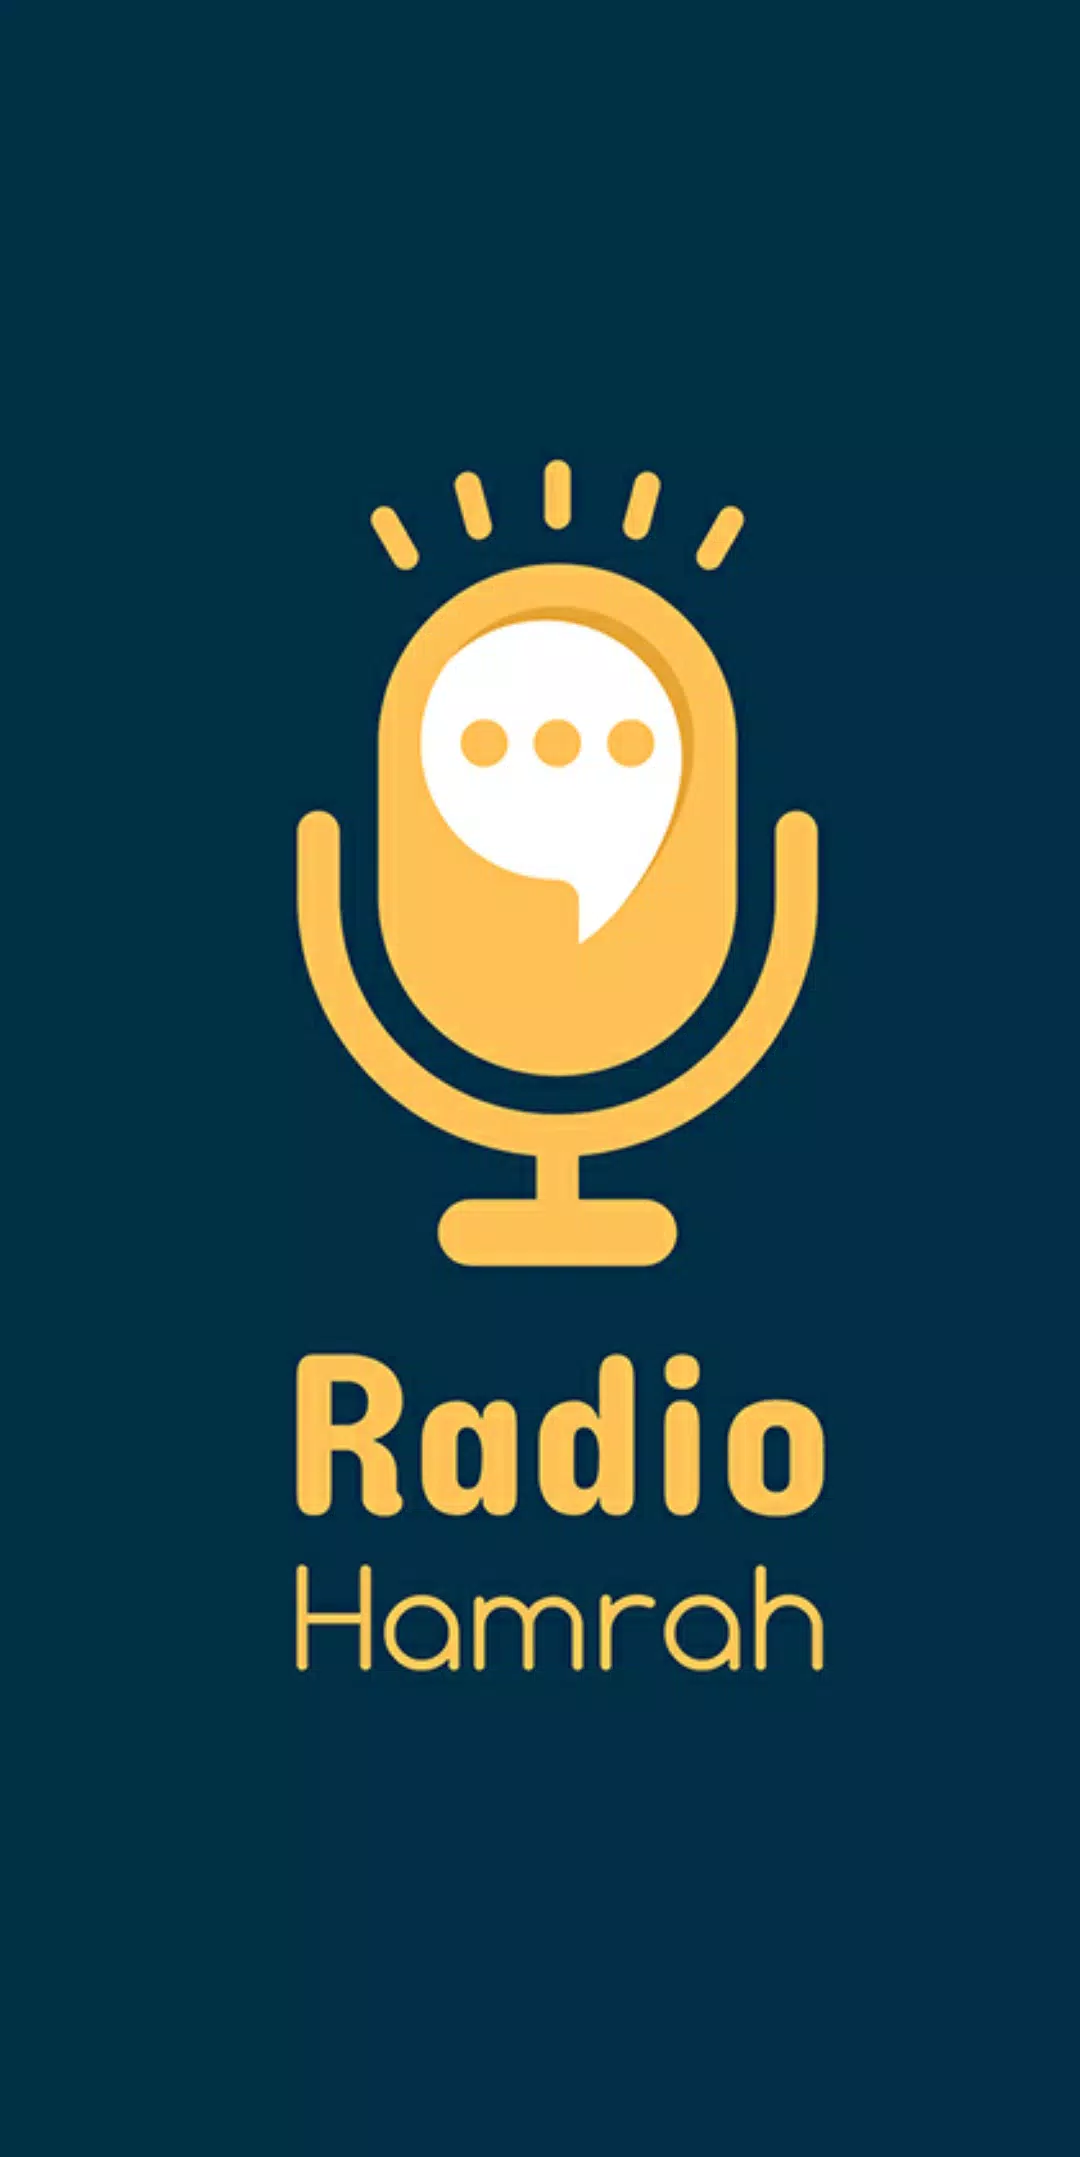 رادیو همراه - Radio Hamrah‎ APK for Android Download